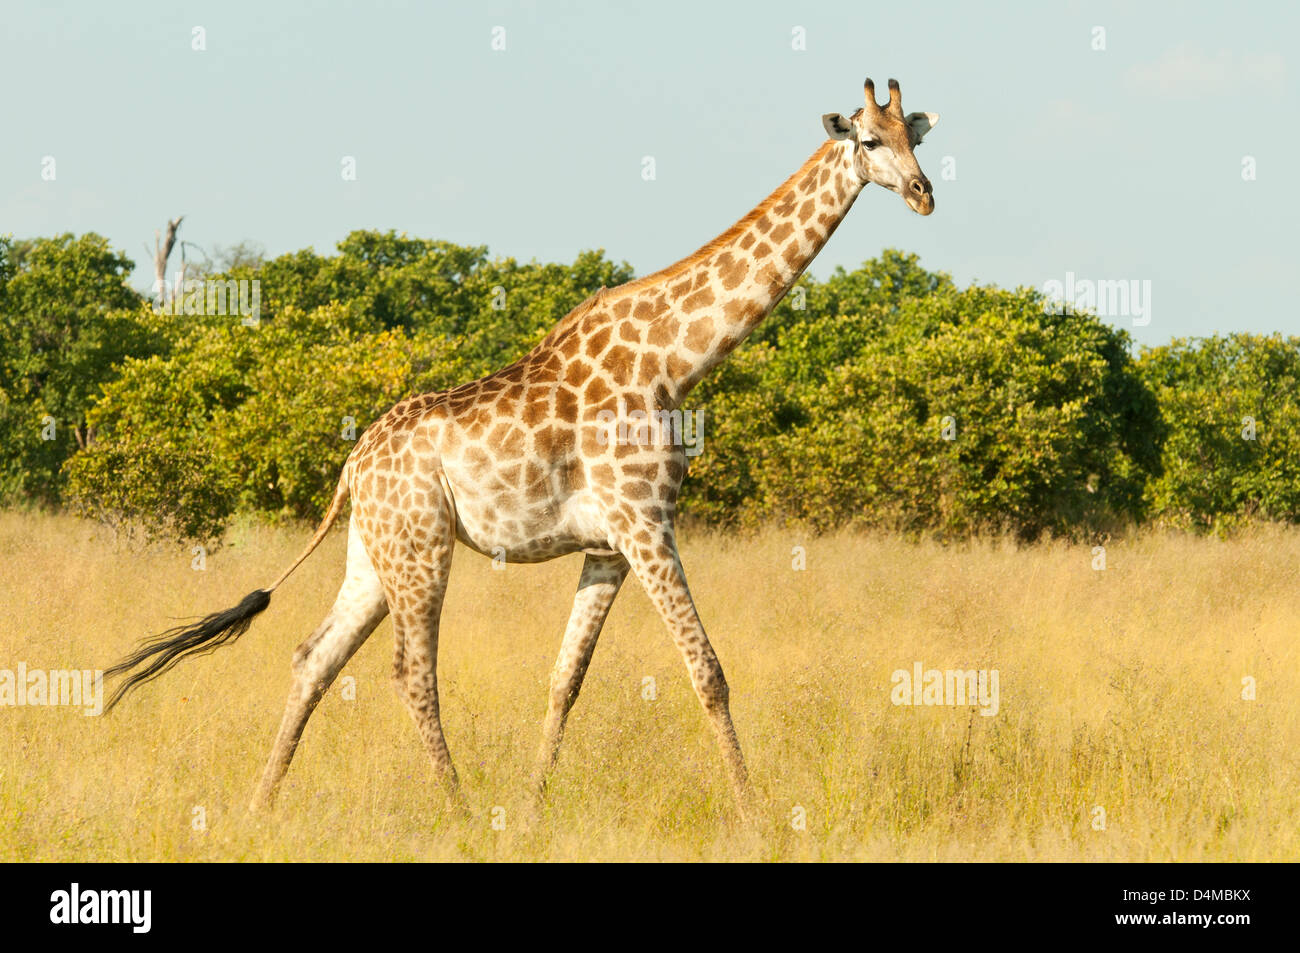 Southern Giraffe at Savute, Chobe National Park, Botswana Stock Photo